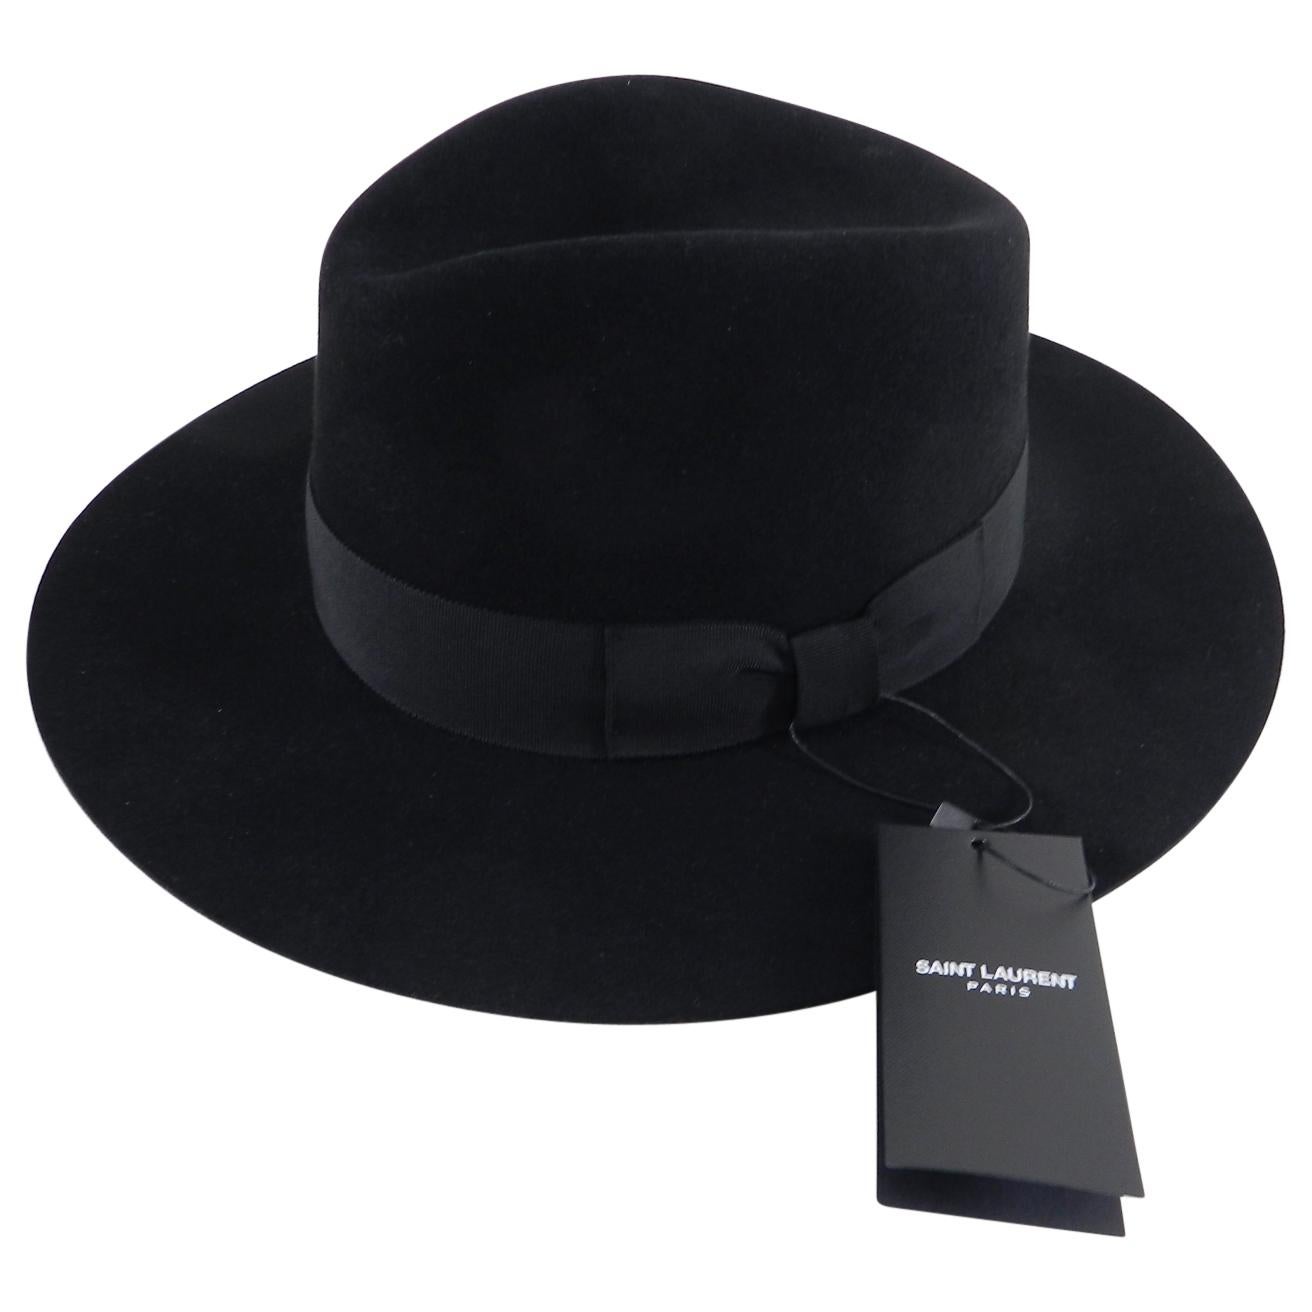 Saint Laurent Black Felt Fedora Wide Brim Hat, Fall 2016 